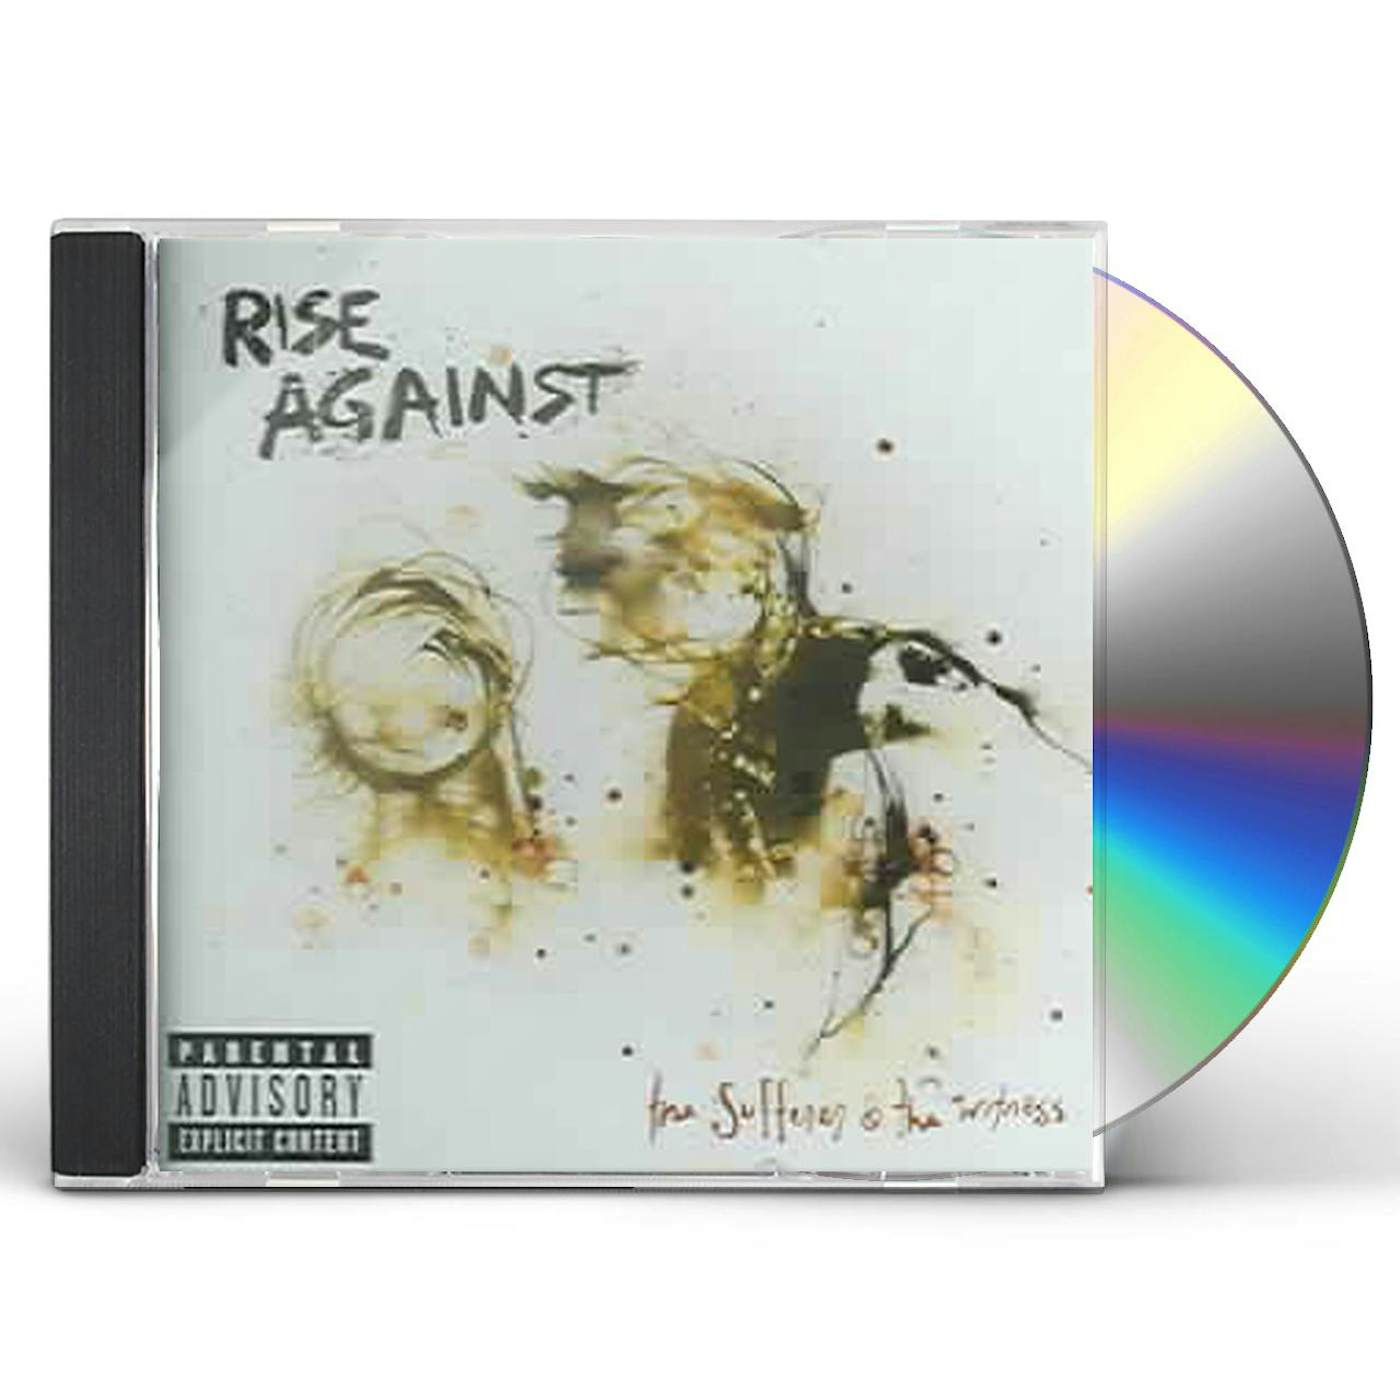 Rise Against SUFFERER & WITNESS CD